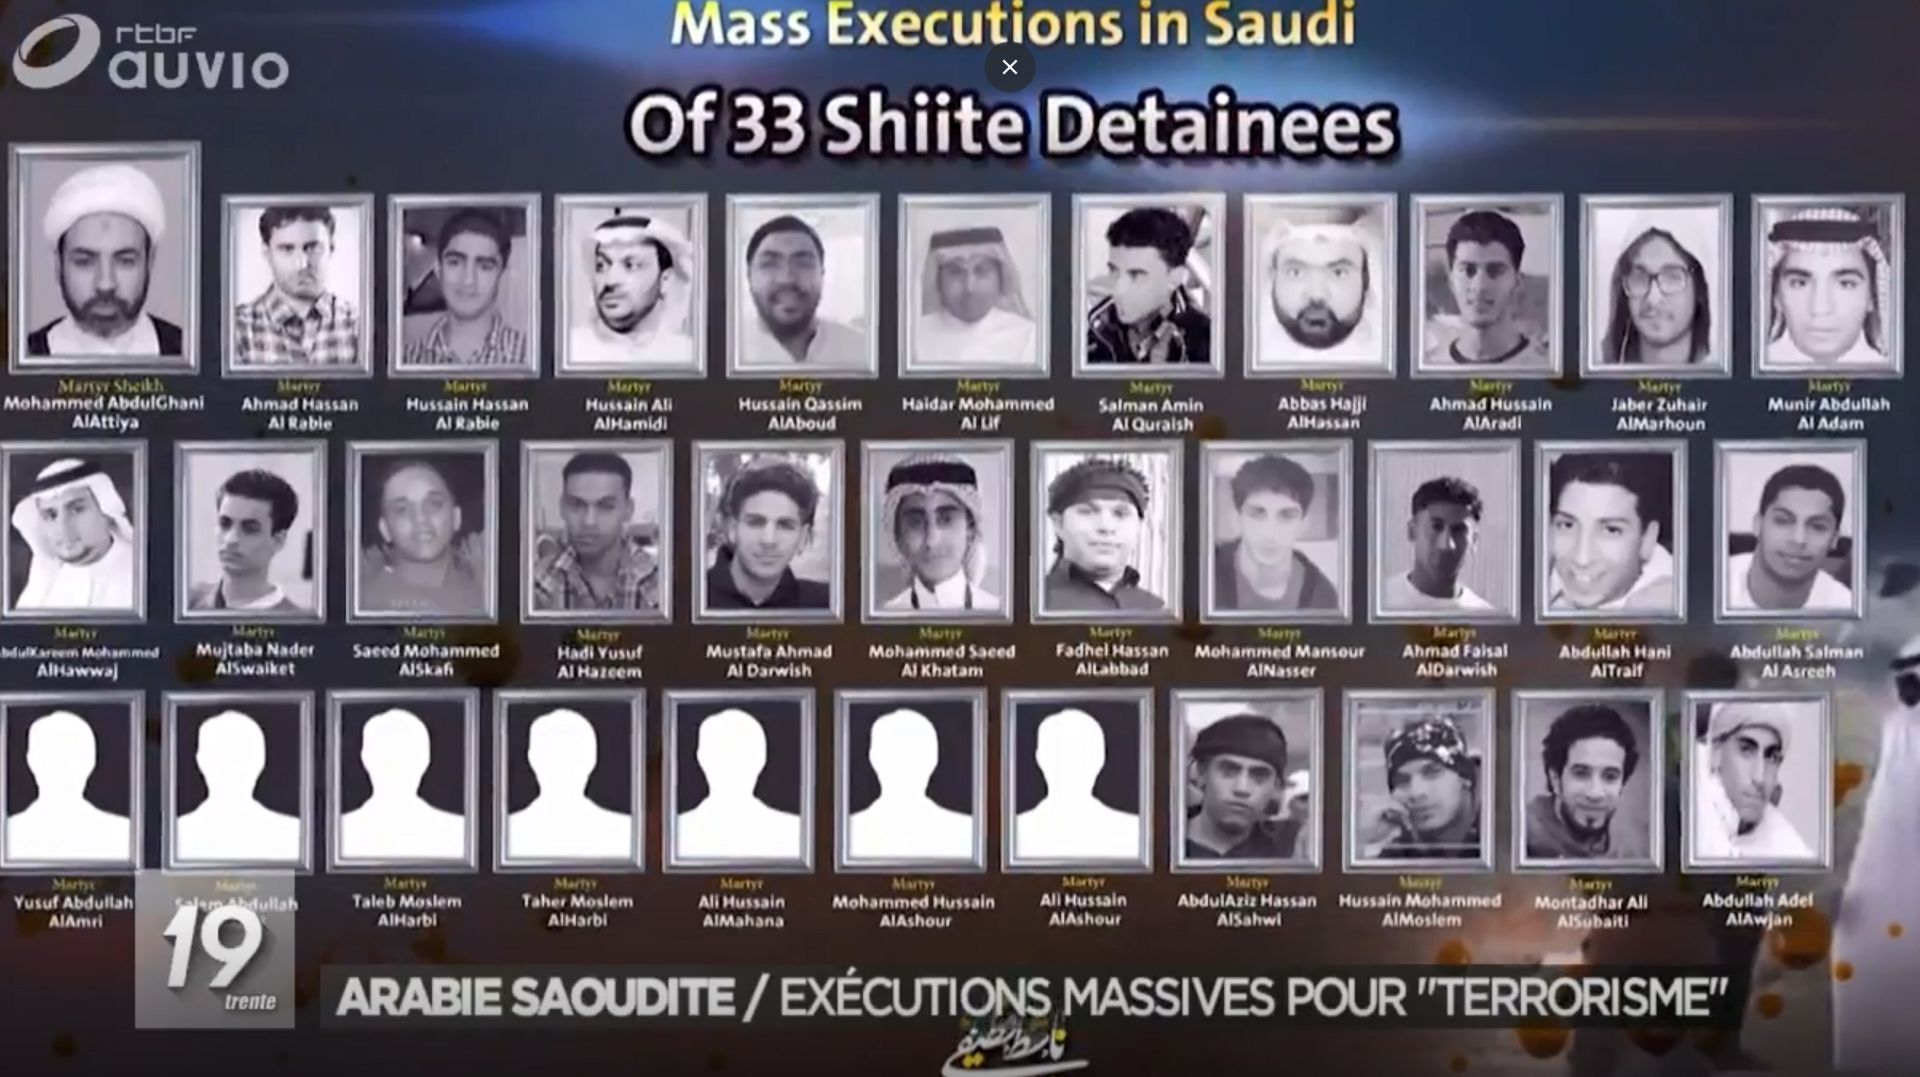 L'Arabie saoudite sous le feu des critiques après des exécutions massives